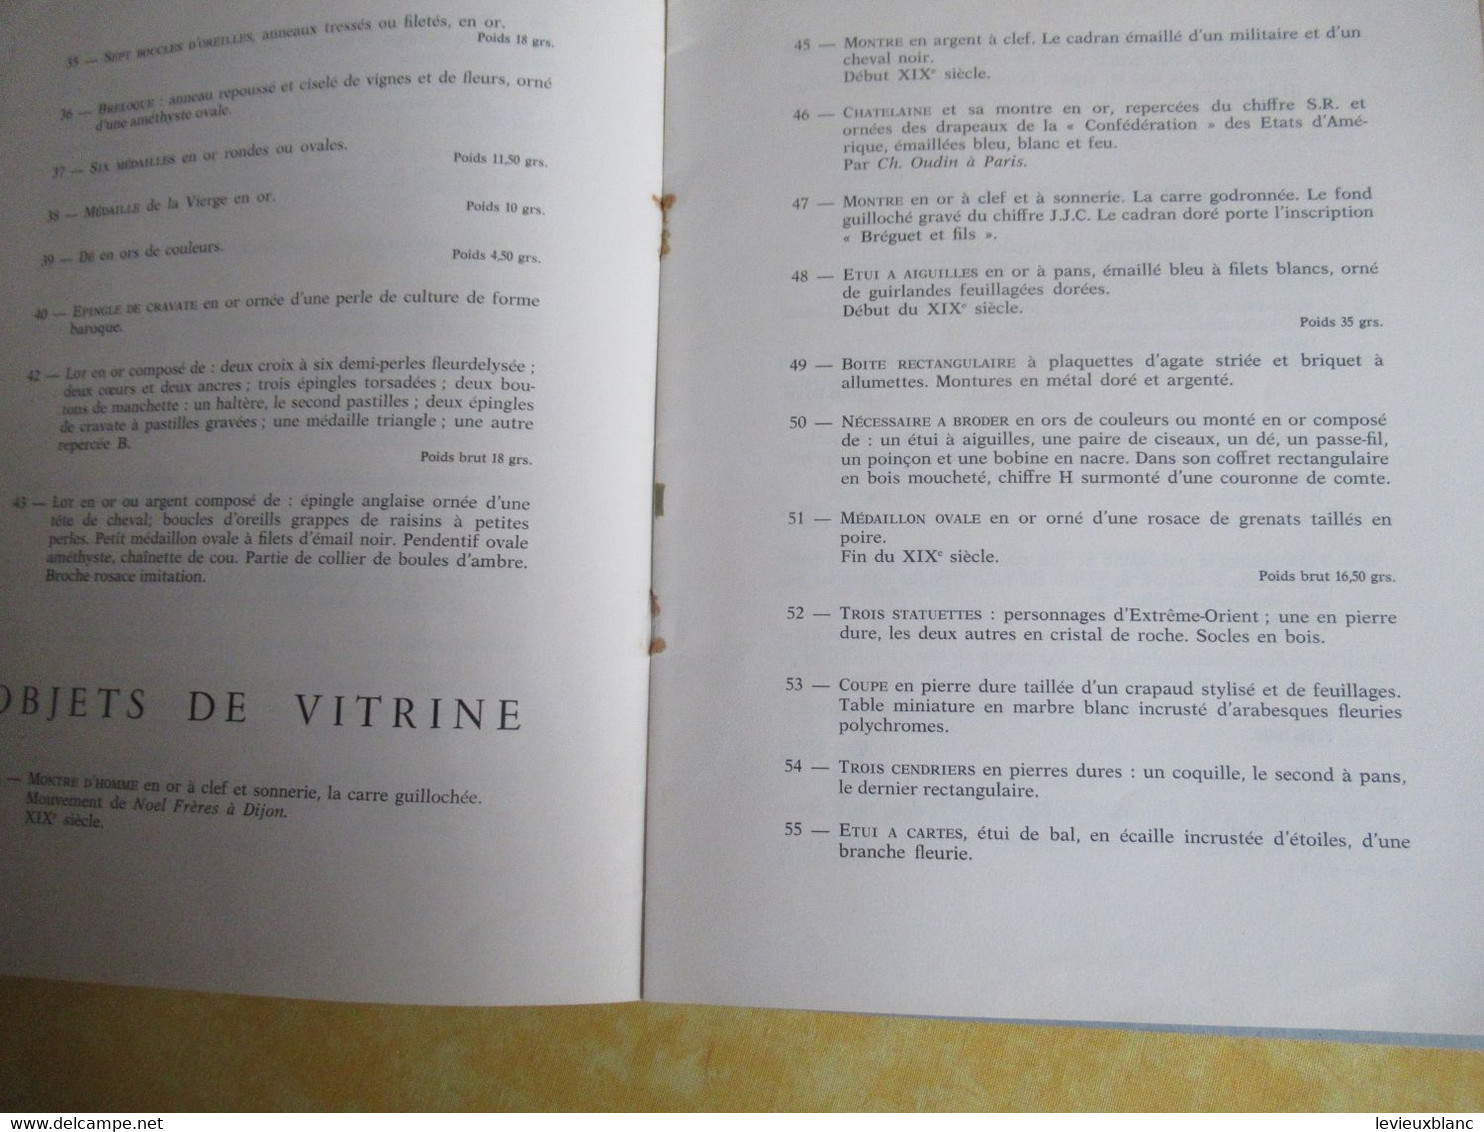 Vente Aux Enchères /Hôtel DROUOT/ Bijoux, Argenterie,Objets De Vitrine / ADER-PICARD/1971  CAT292 - Riviste & Cataloghi